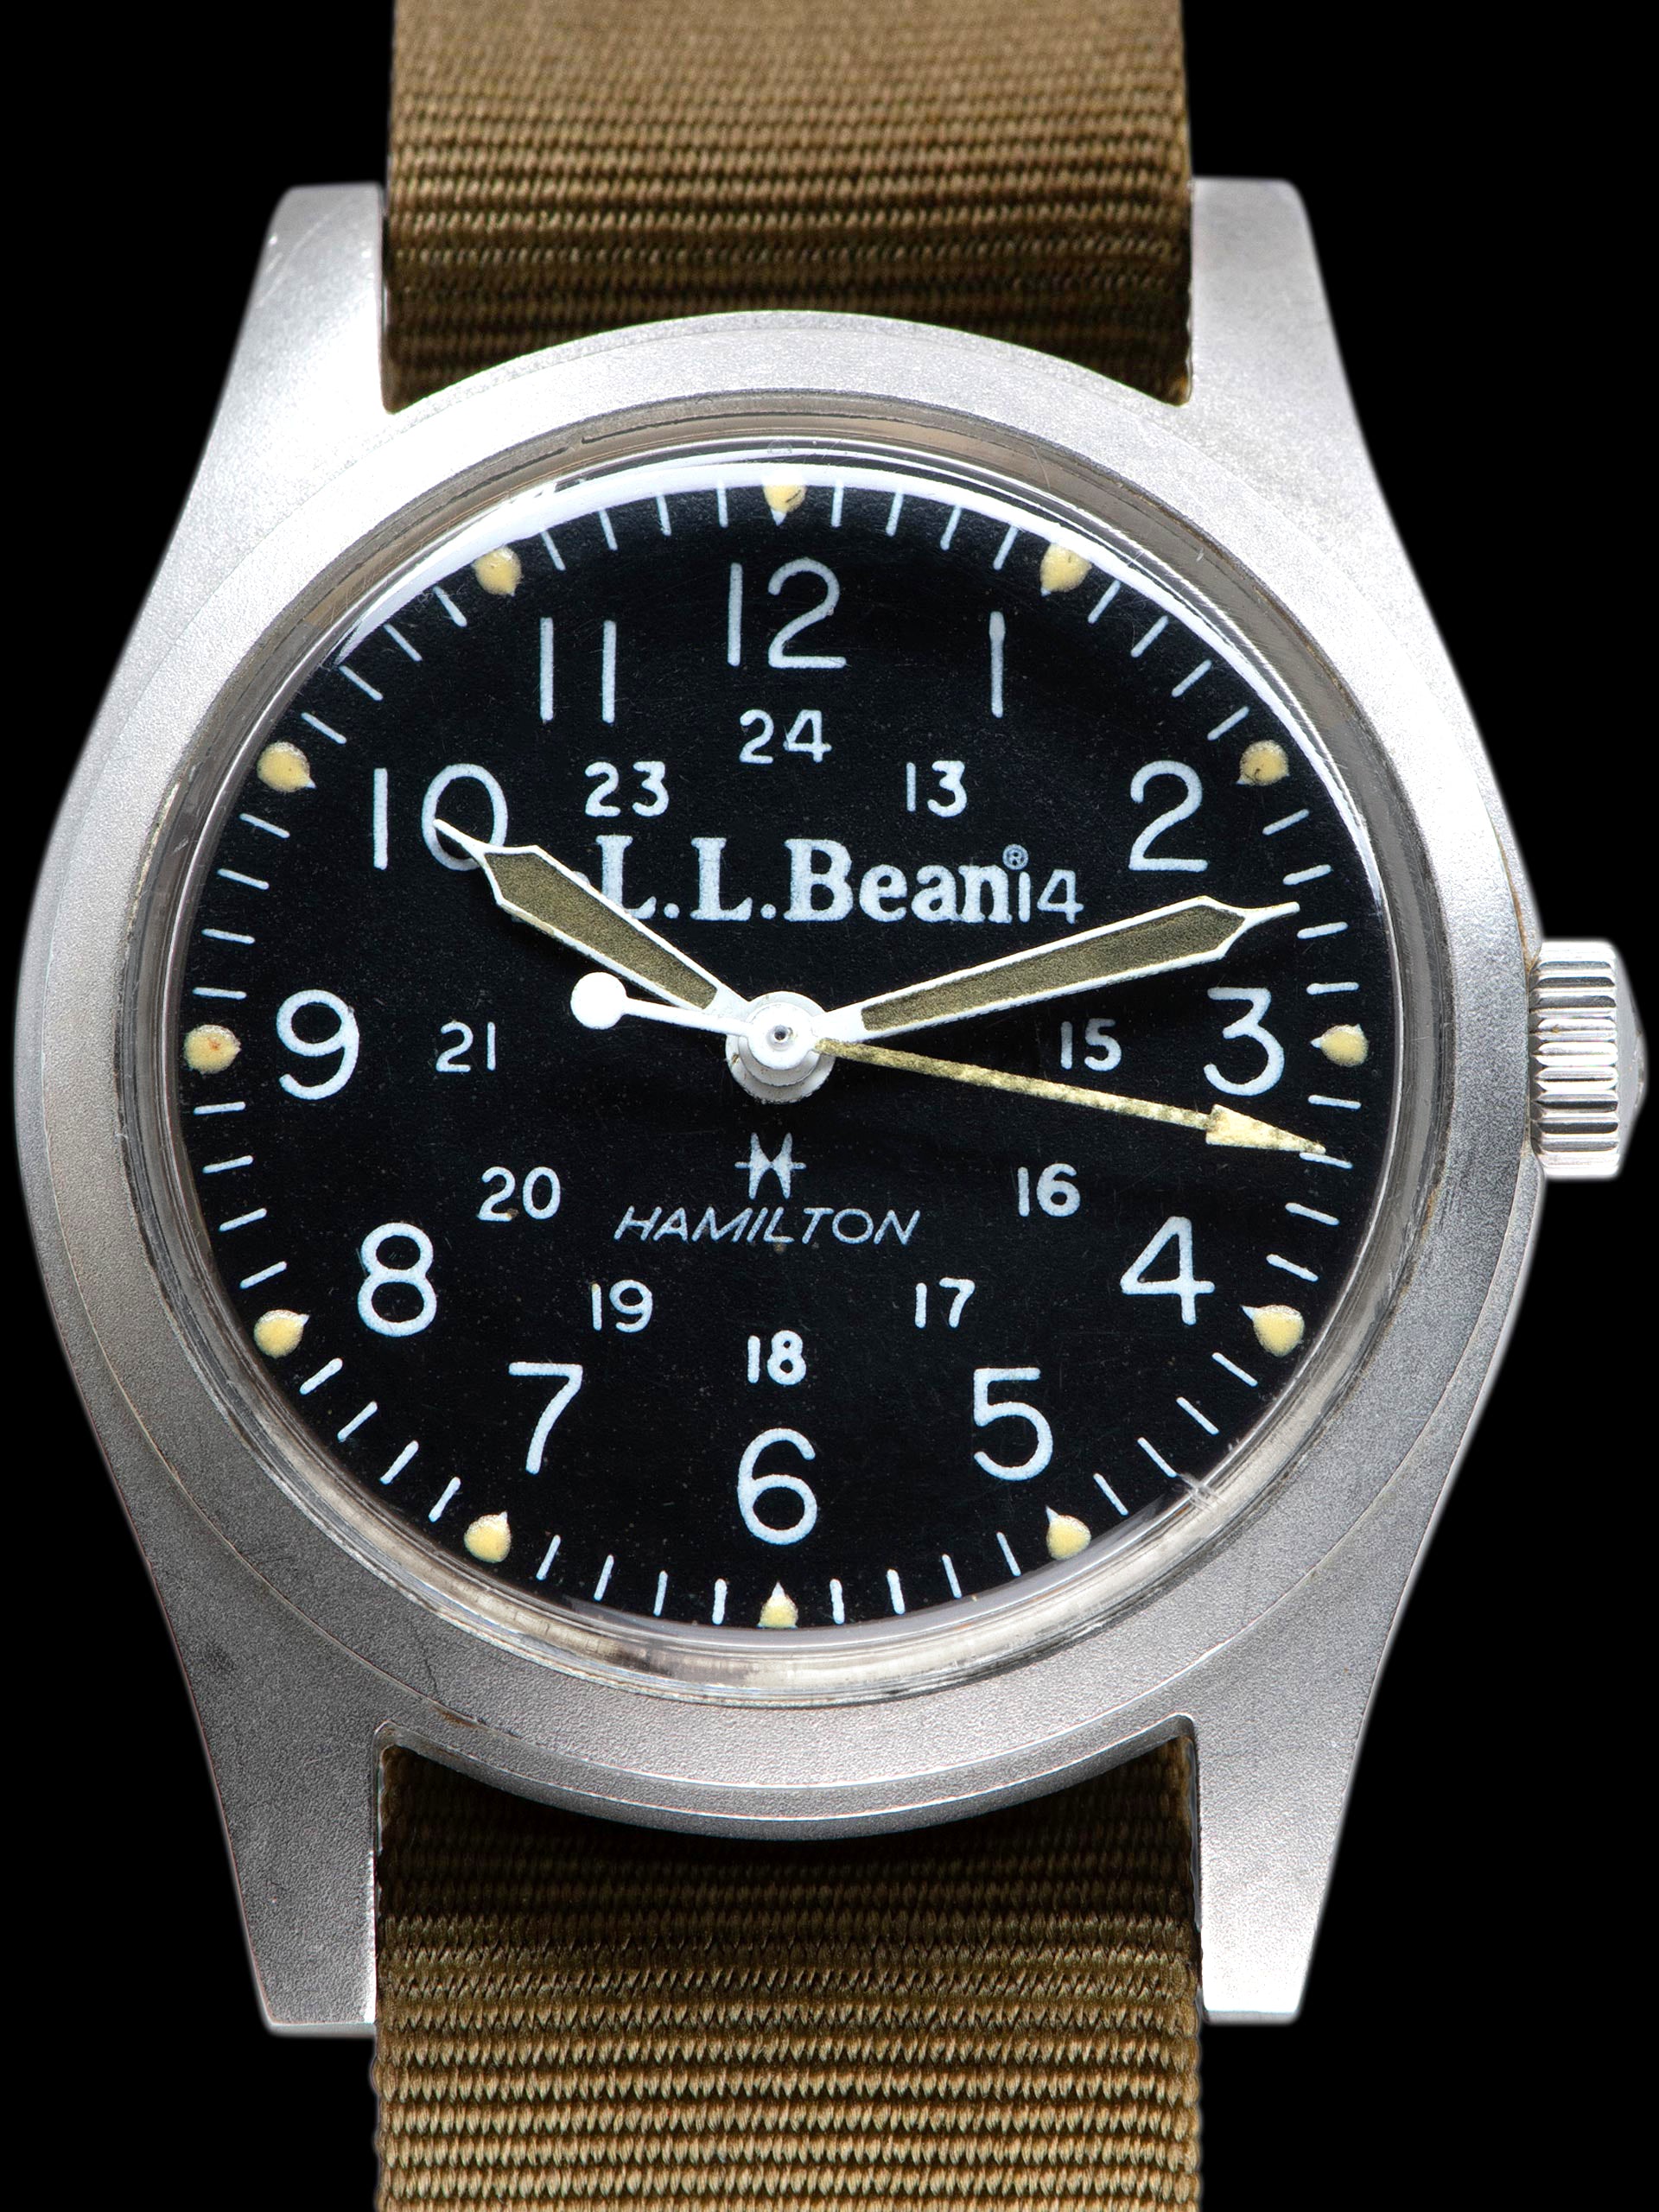 1980s Hamilton Khaki Field Watch (Ref. 921980) "L.L. Bean"